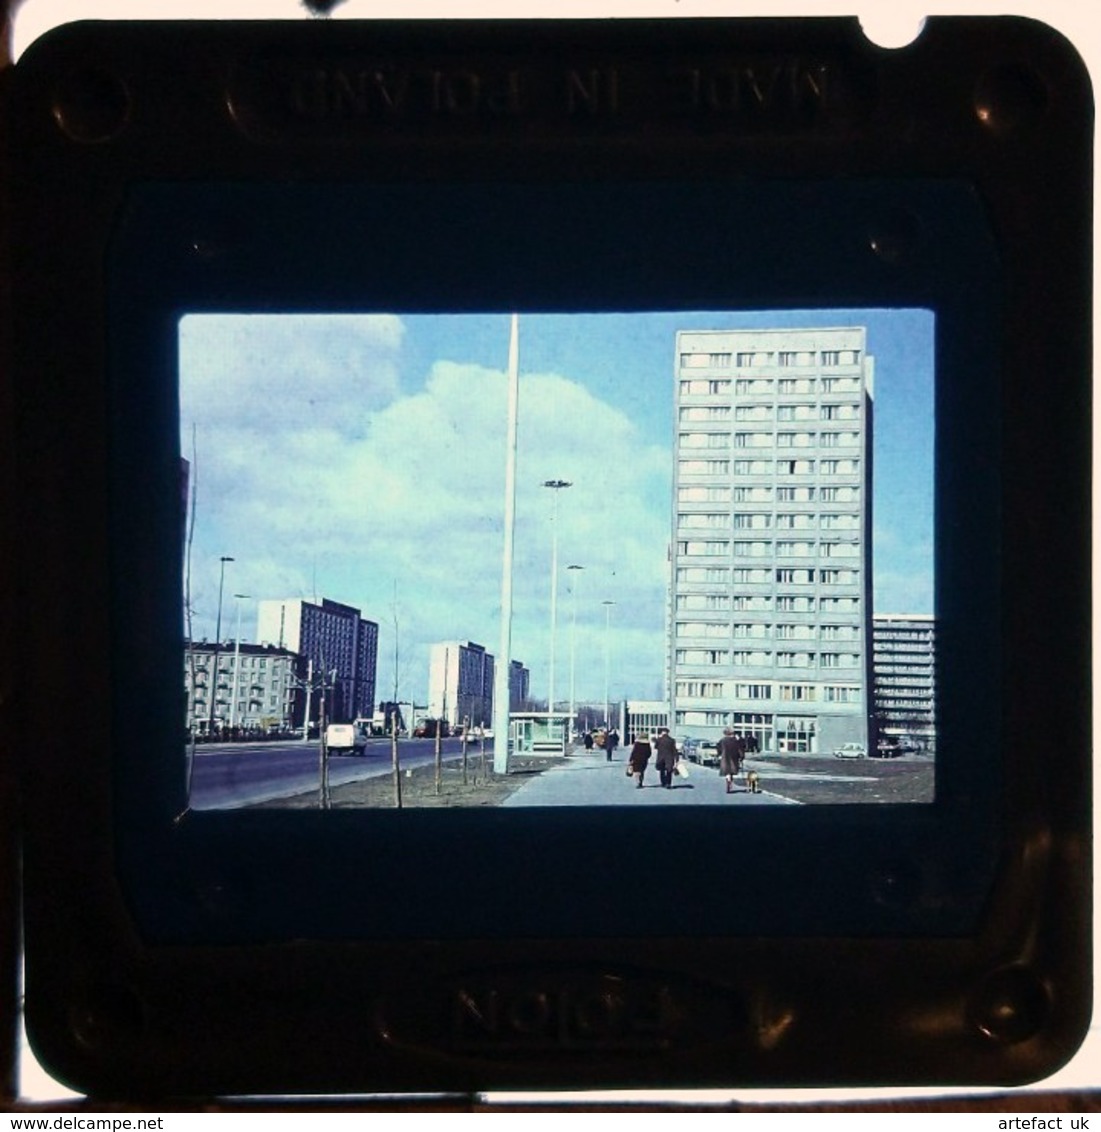 WARSZAWA WARSAW WARSCHAU VARSOVIE 1974, Original Colour 35mm Slide - Diapositives (slides)